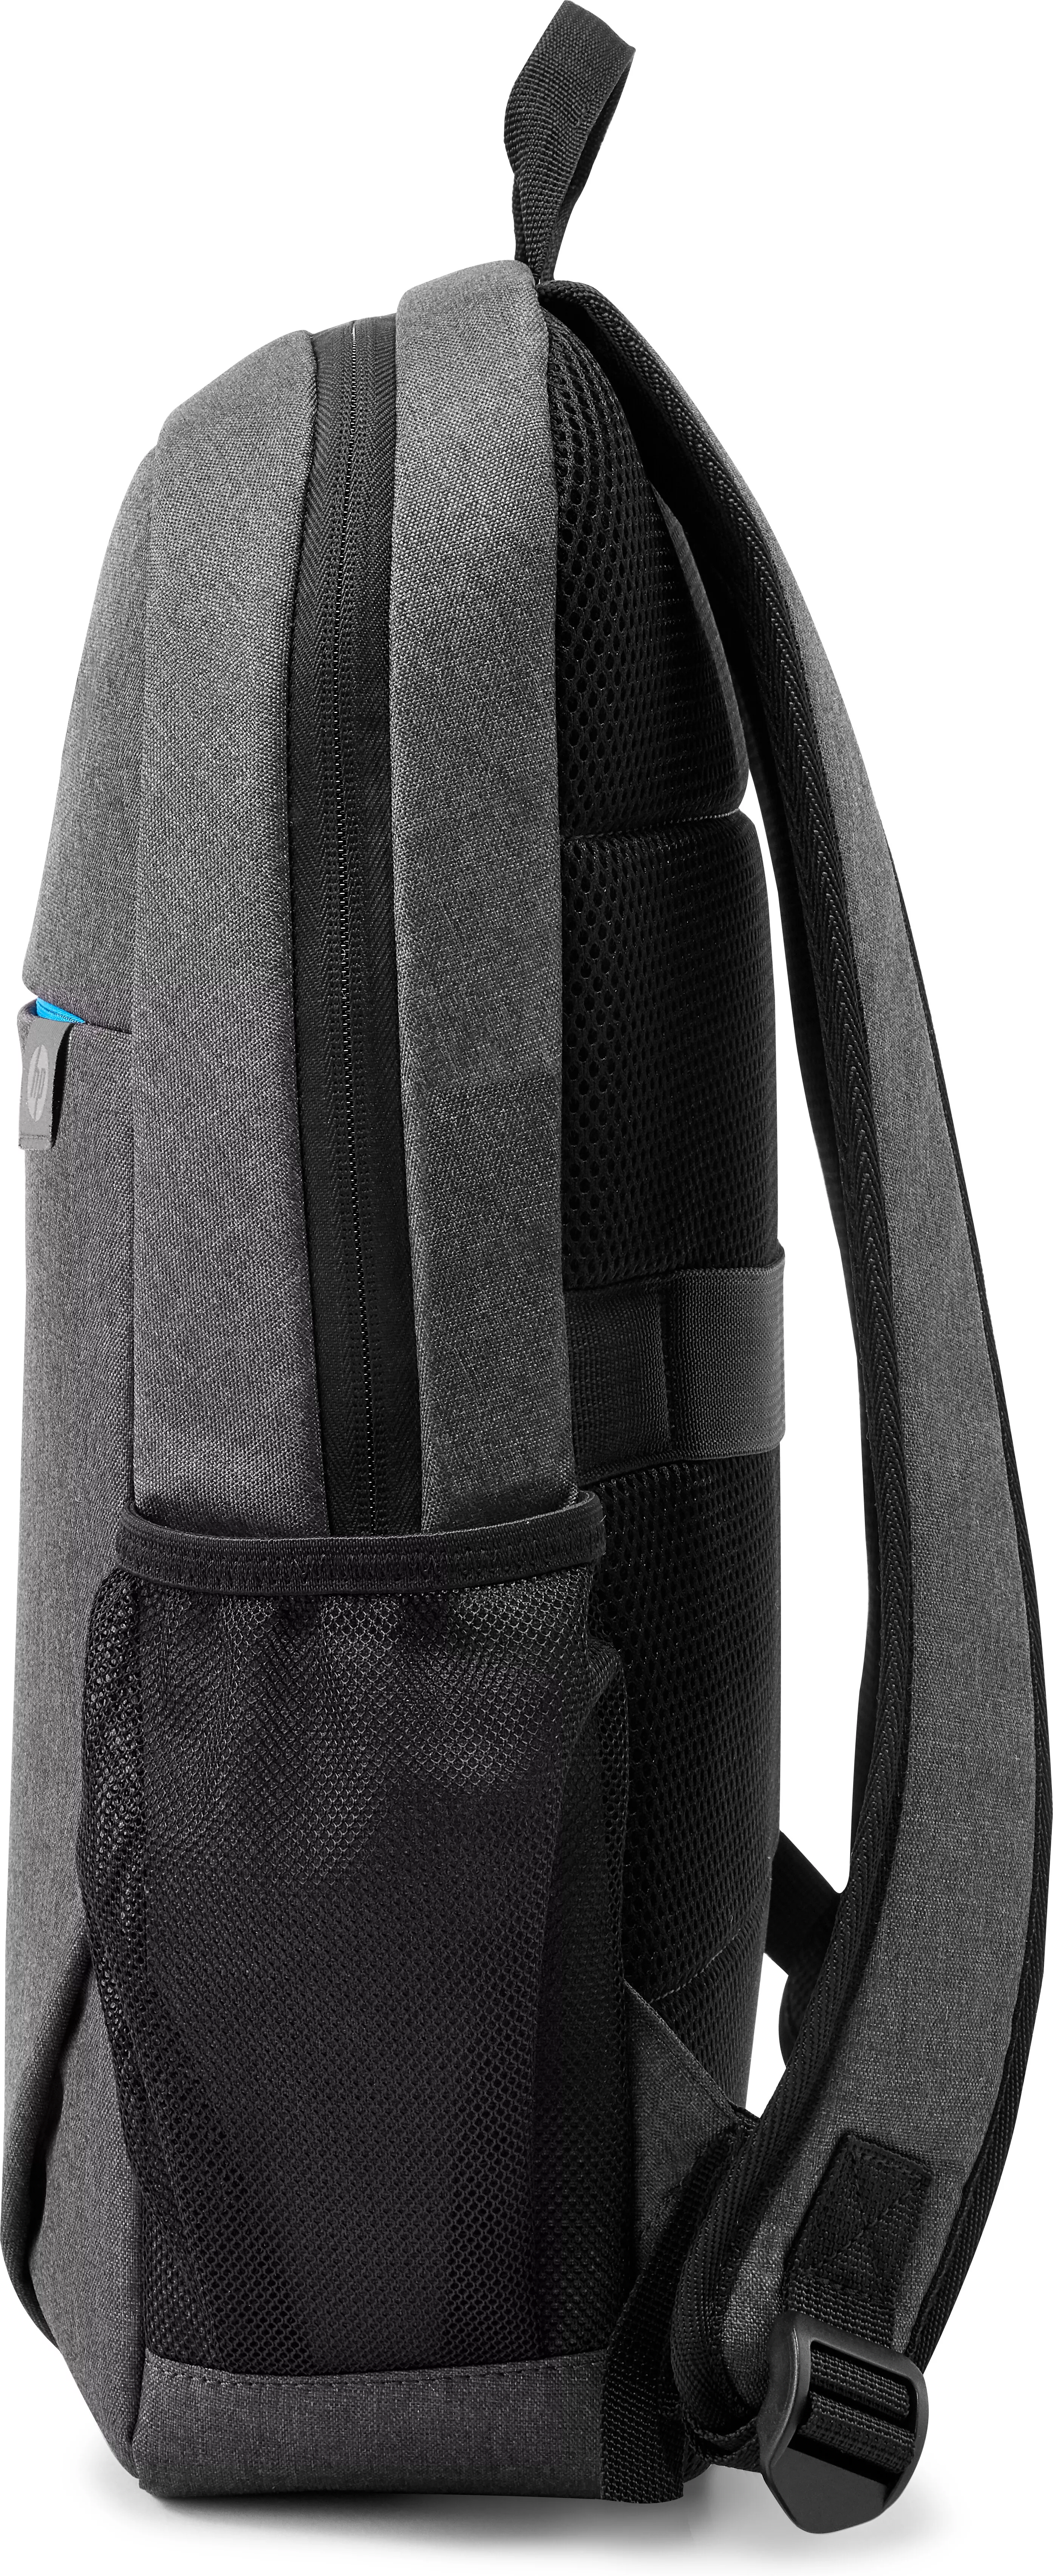 Vente HP Prelude 15.6p Backpack HP au meilleur prix - visuel 6